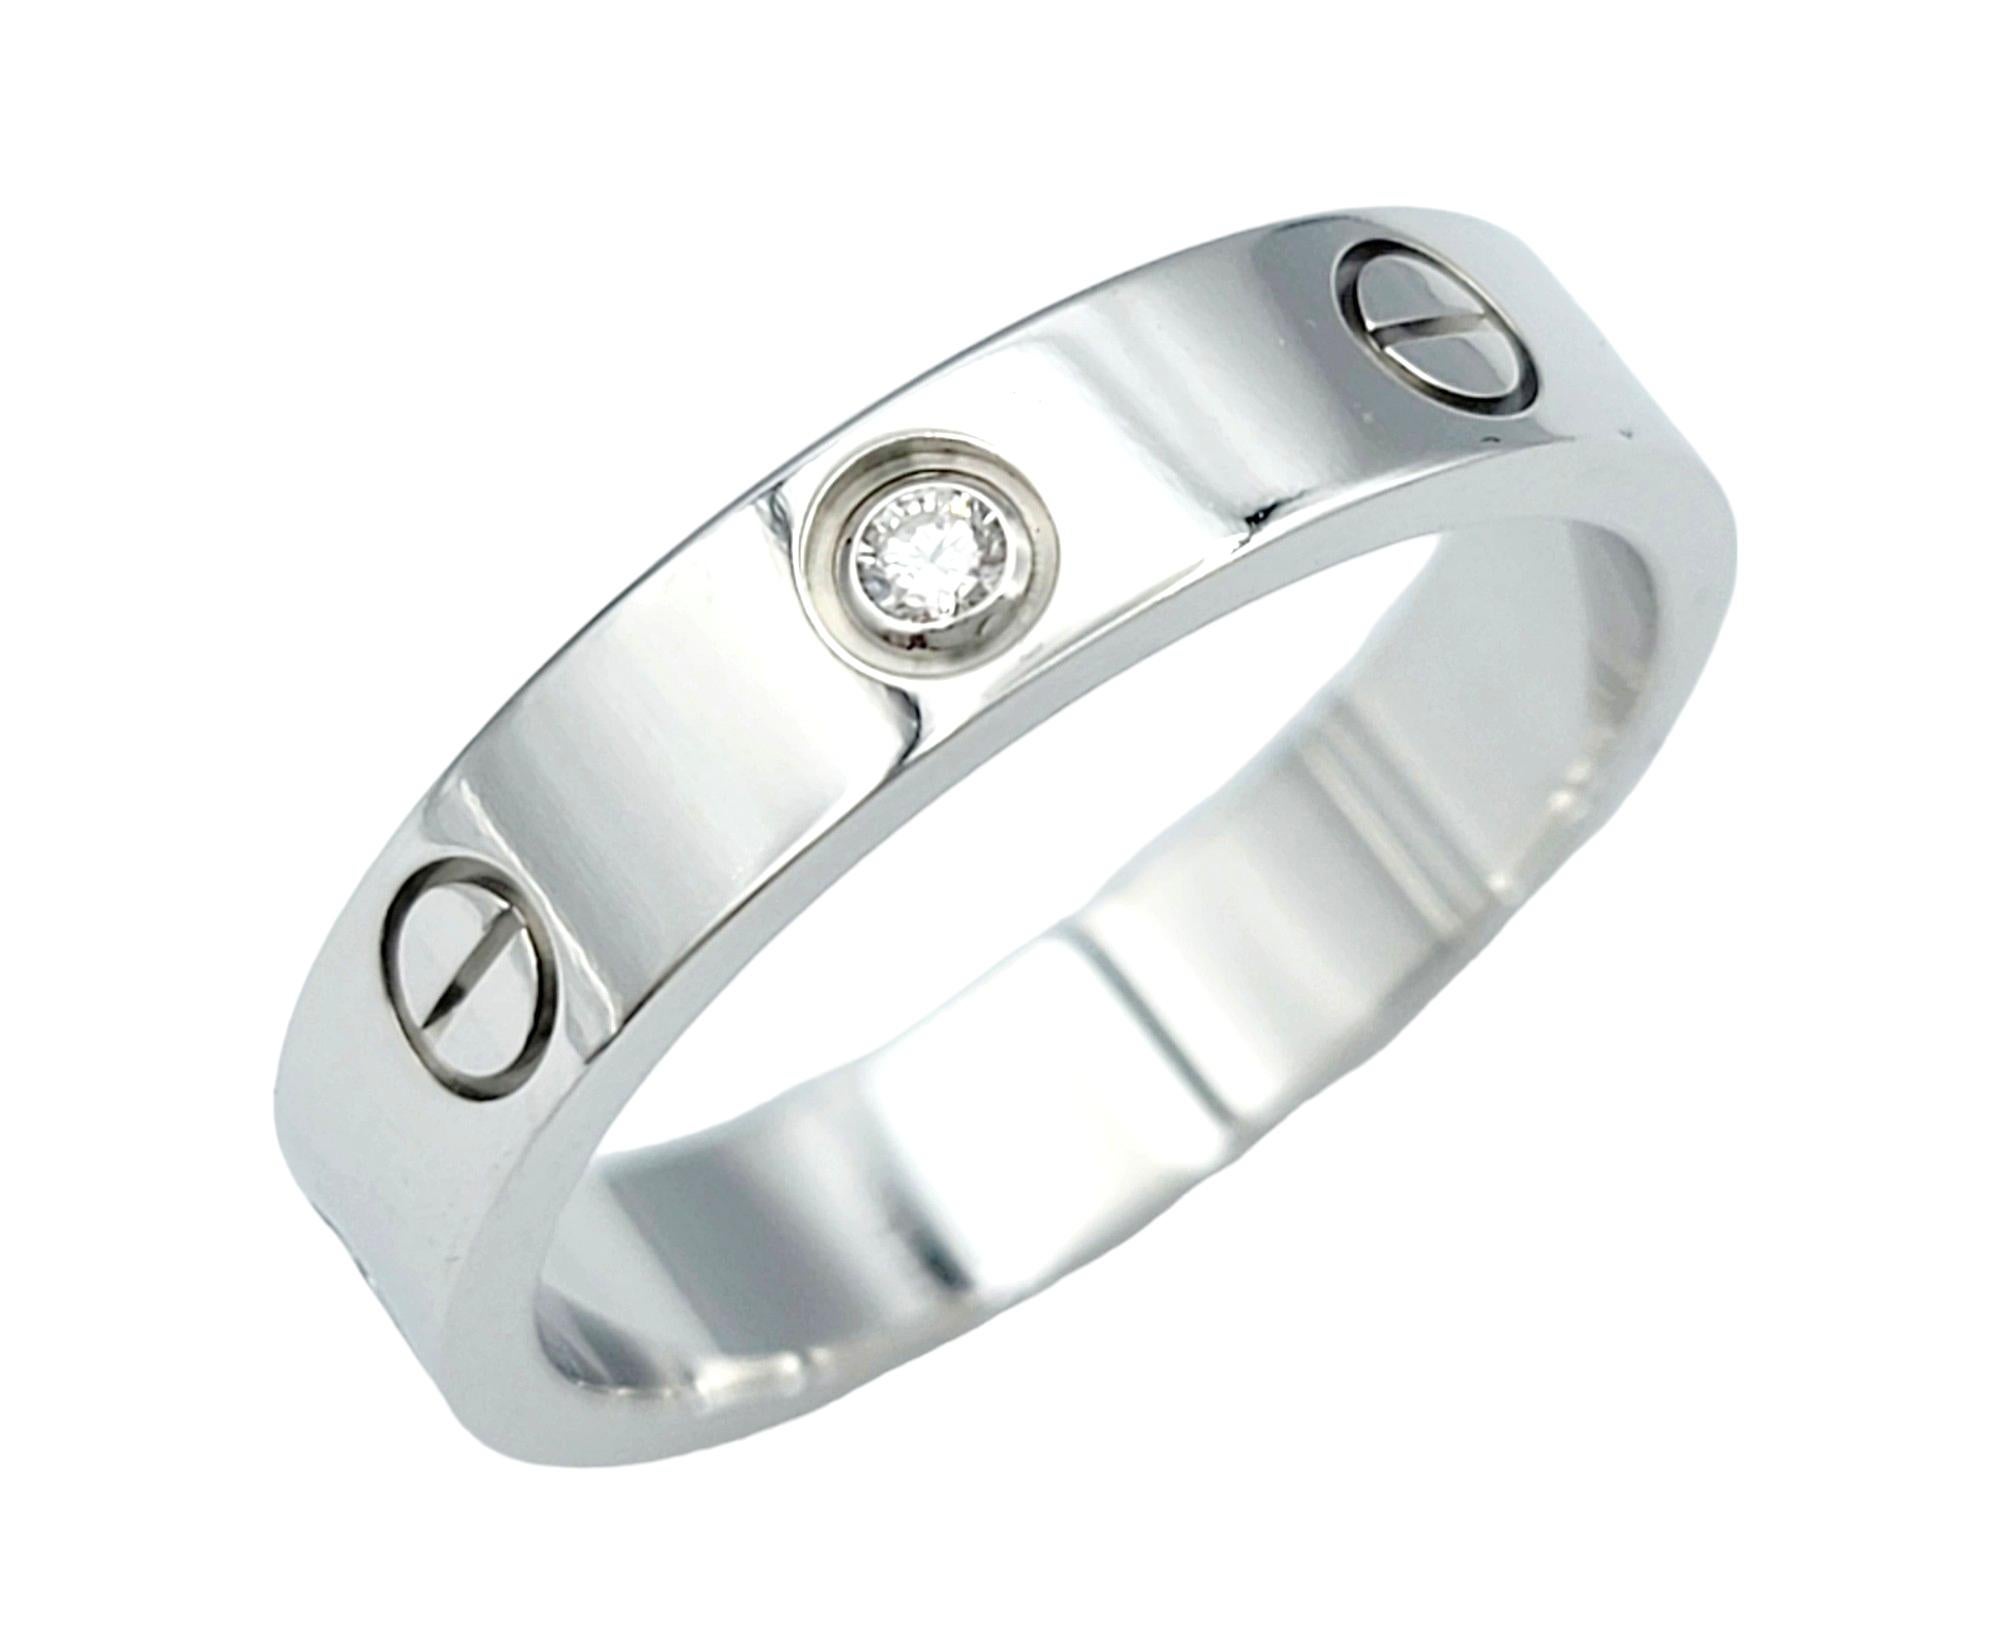 Ringgröße: 6.5 (US), 53 (EU)

Dieser atemberaubende Cartier Love Ring aus 18 Karat Weißgold mit einem einzelnen Diamanten ist ein Symbol für zeitlose Eleganz und Raffinesse. Dieser vom renommierten Haus Cartier gefertigte Ring weist das ikonische